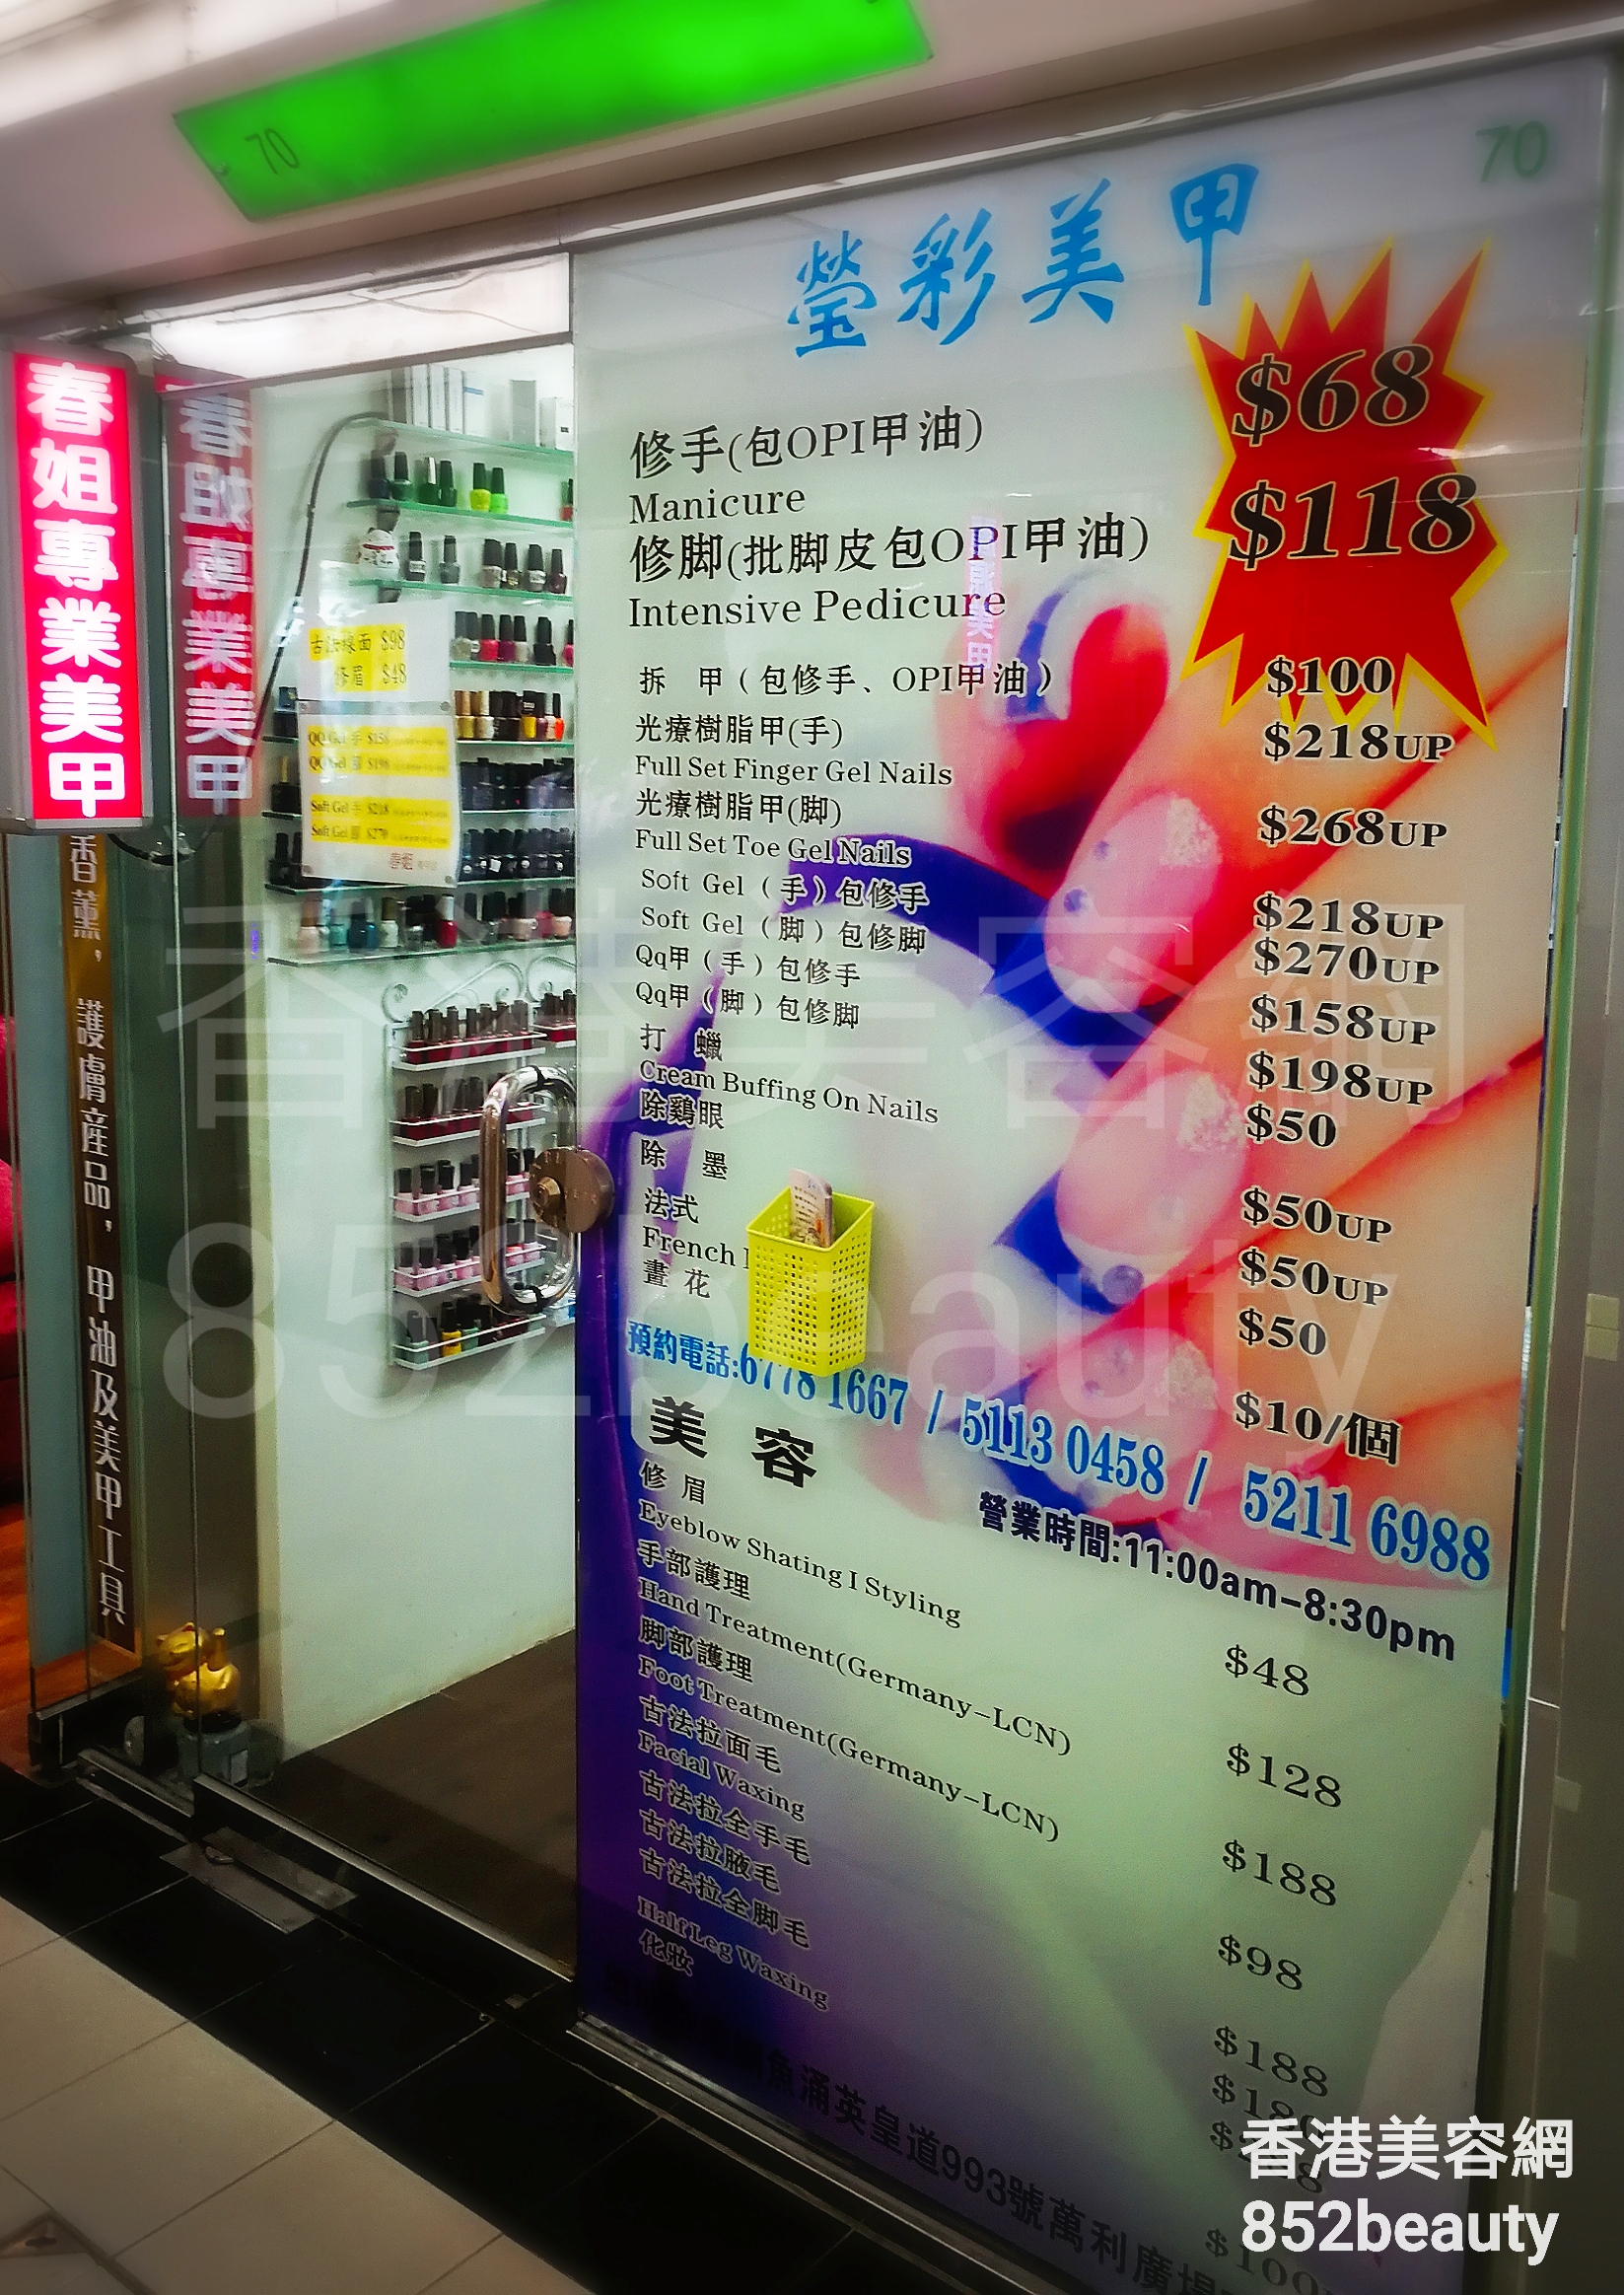 香港美容網 Hong Kong Beauty Salon 美容院 / 美容師: 瑩彩美甲